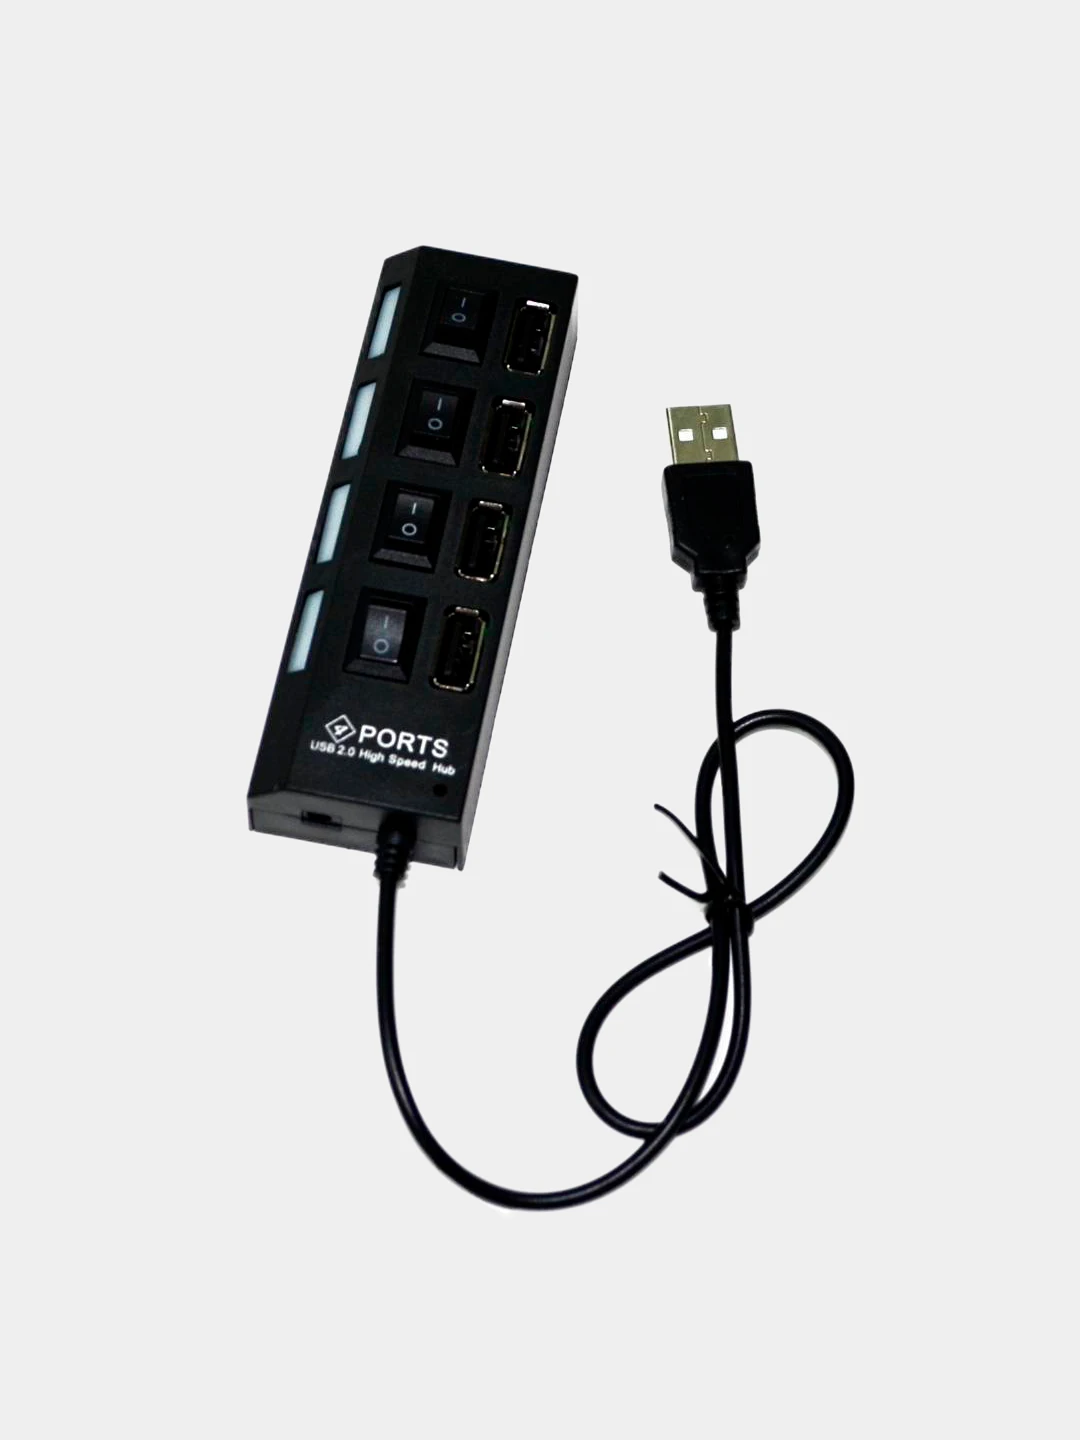 Defender quadro. USB-Hub 4-Port (4хusb 2.0, провод неразъемный, кнопки вкл/выкл) черный. Разветвитель USB Defender Quadro PROMT USB 2.0, 4 порта (83200). Hub Defender Quadro Power USB2.0, 4 порта (1/100). USB-концентратор Defender Quadro Express (83204), разъемов: 4.